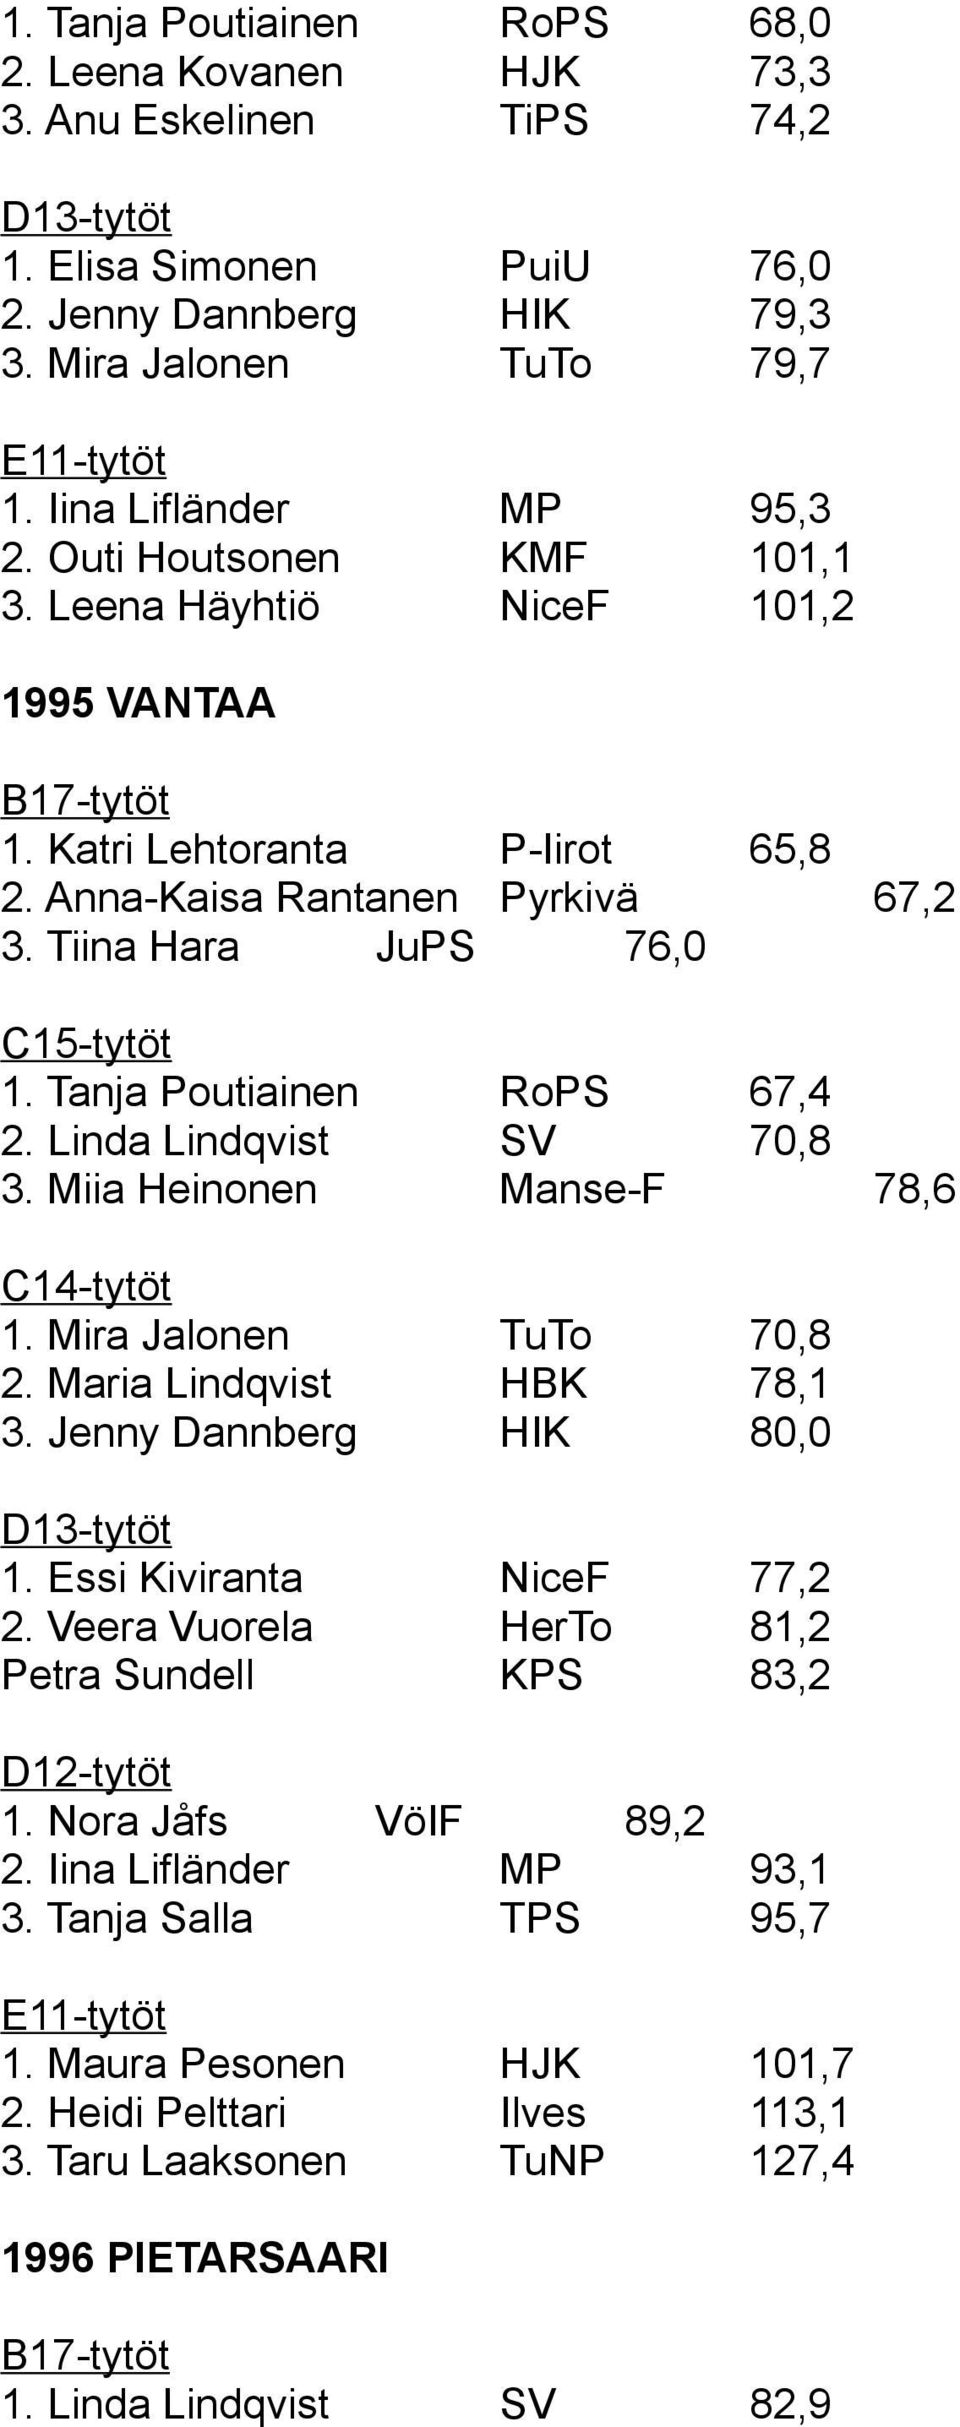 Linda Lindqvist SV 70,8 3. Miia Heinonen Manse-F 78,6 1. Mira Jalonen TuTo 70,8 2. Maria Lindqvist HBK 78,1 3. Jenny Dannberg HIK 80,0 1. Essi Kiviranta NiceF 77,2 2.